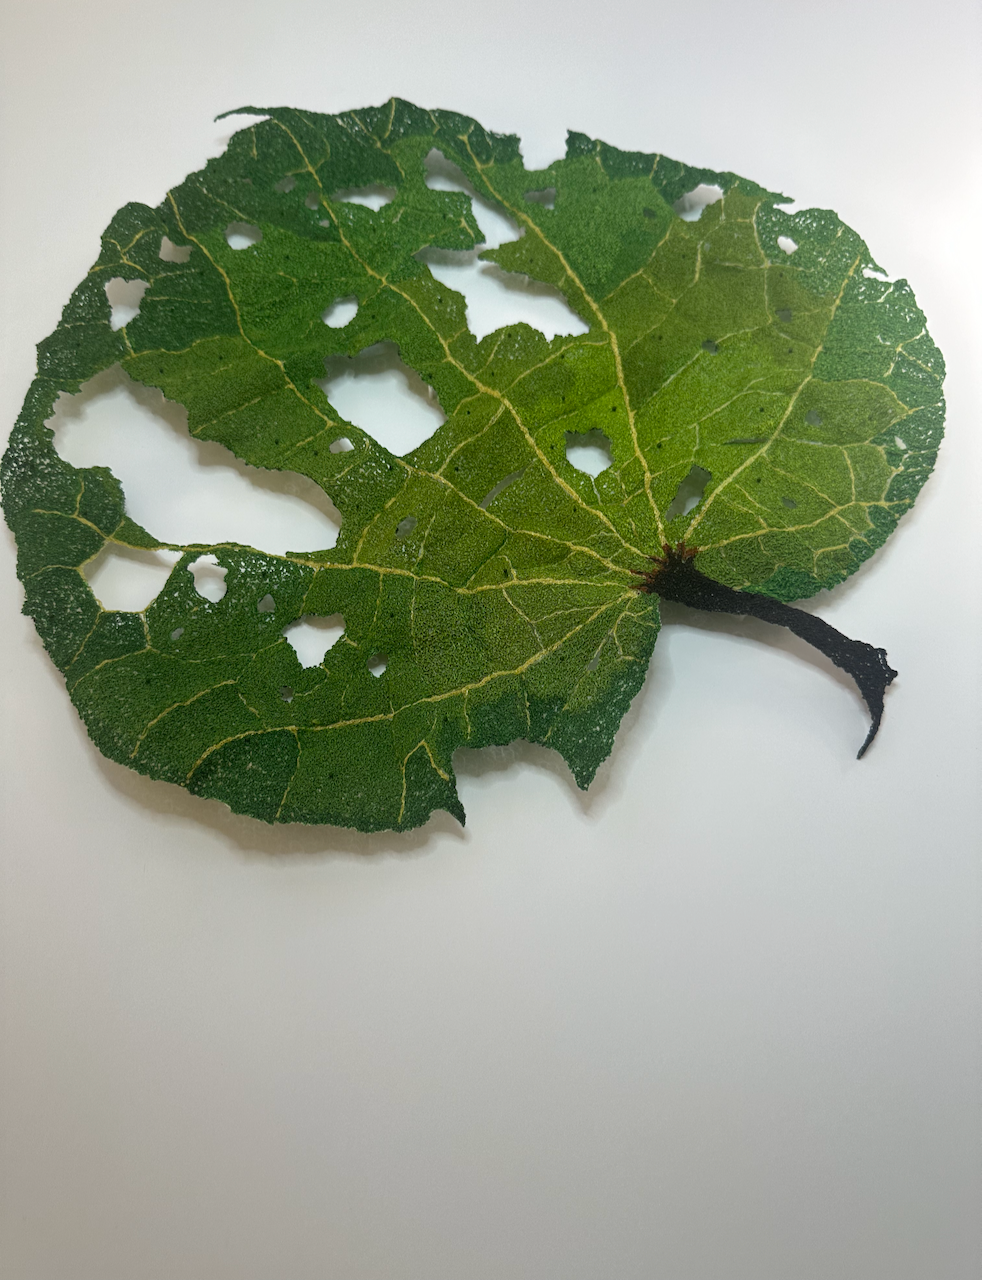 Giant Kawakawa Leaf sculptural embroidery